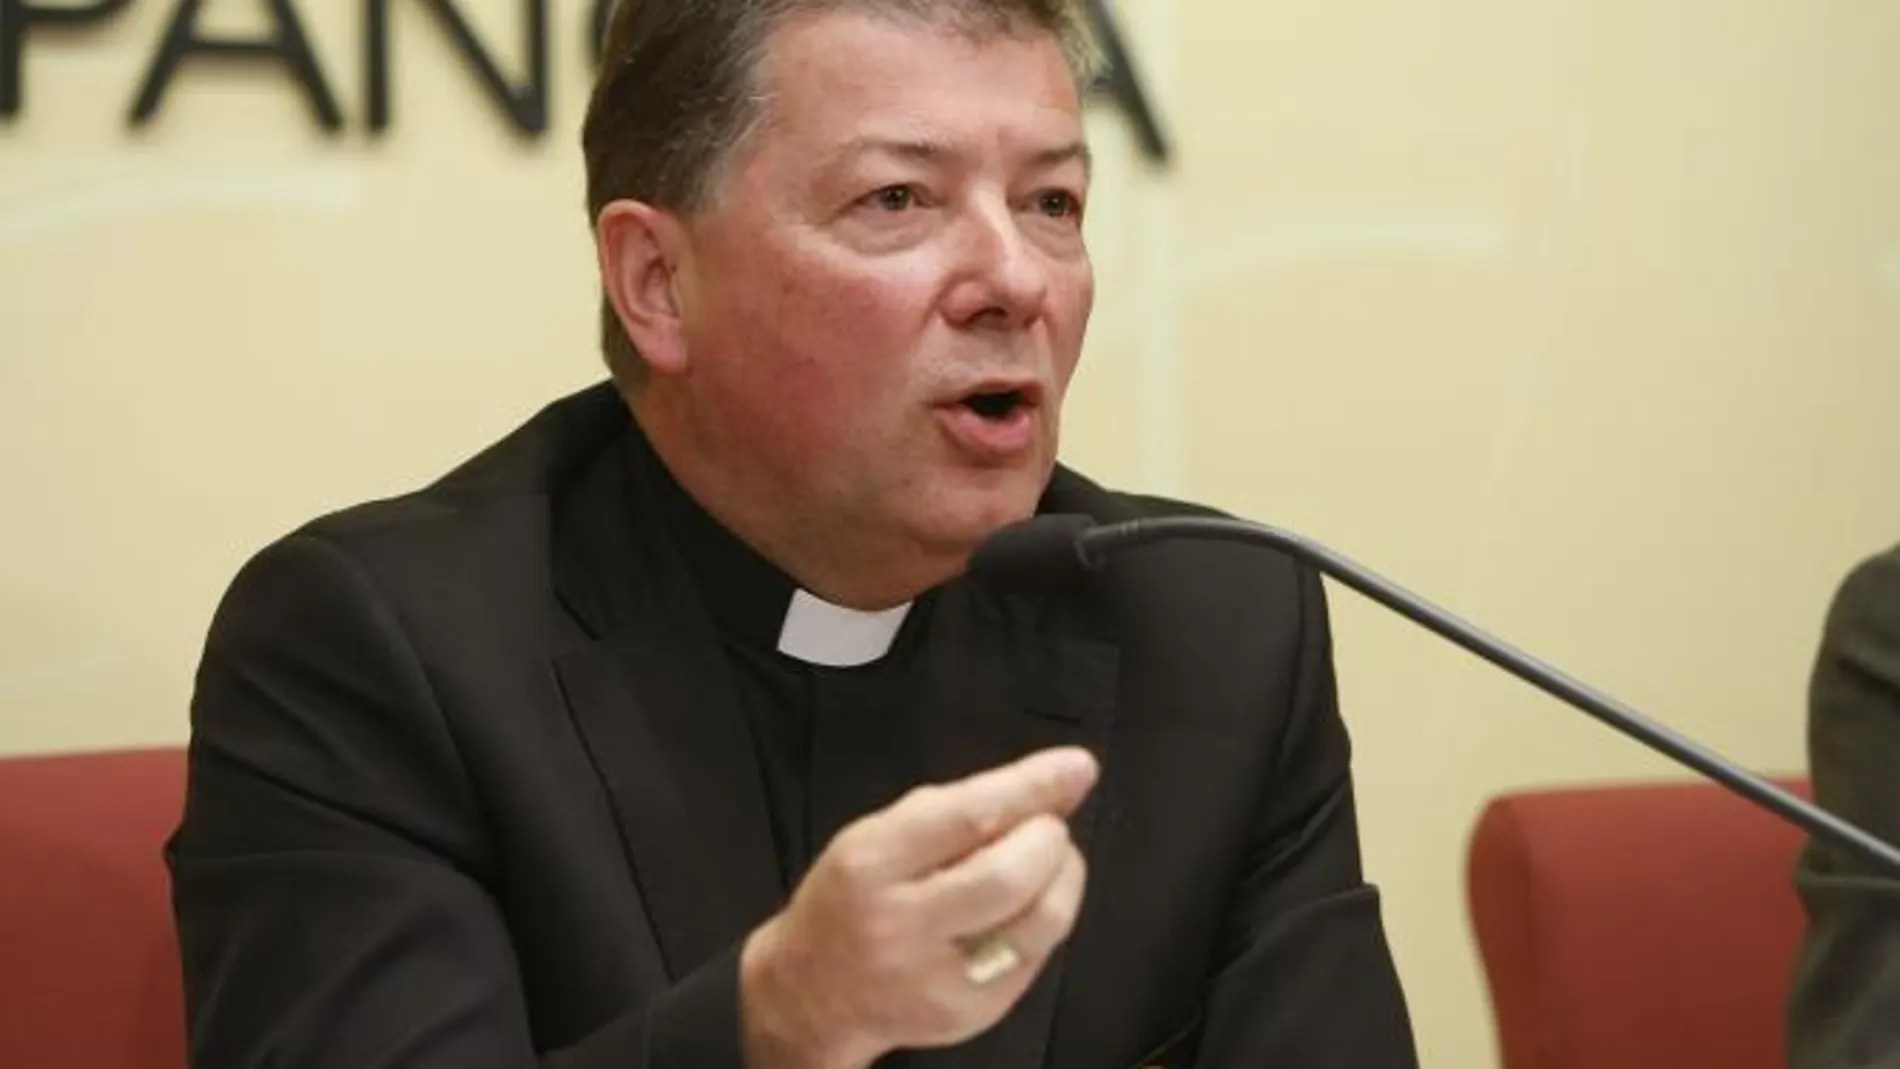 La Iglesia suma 200000 apoyos más en el IRPF pese a los ataques laicistas